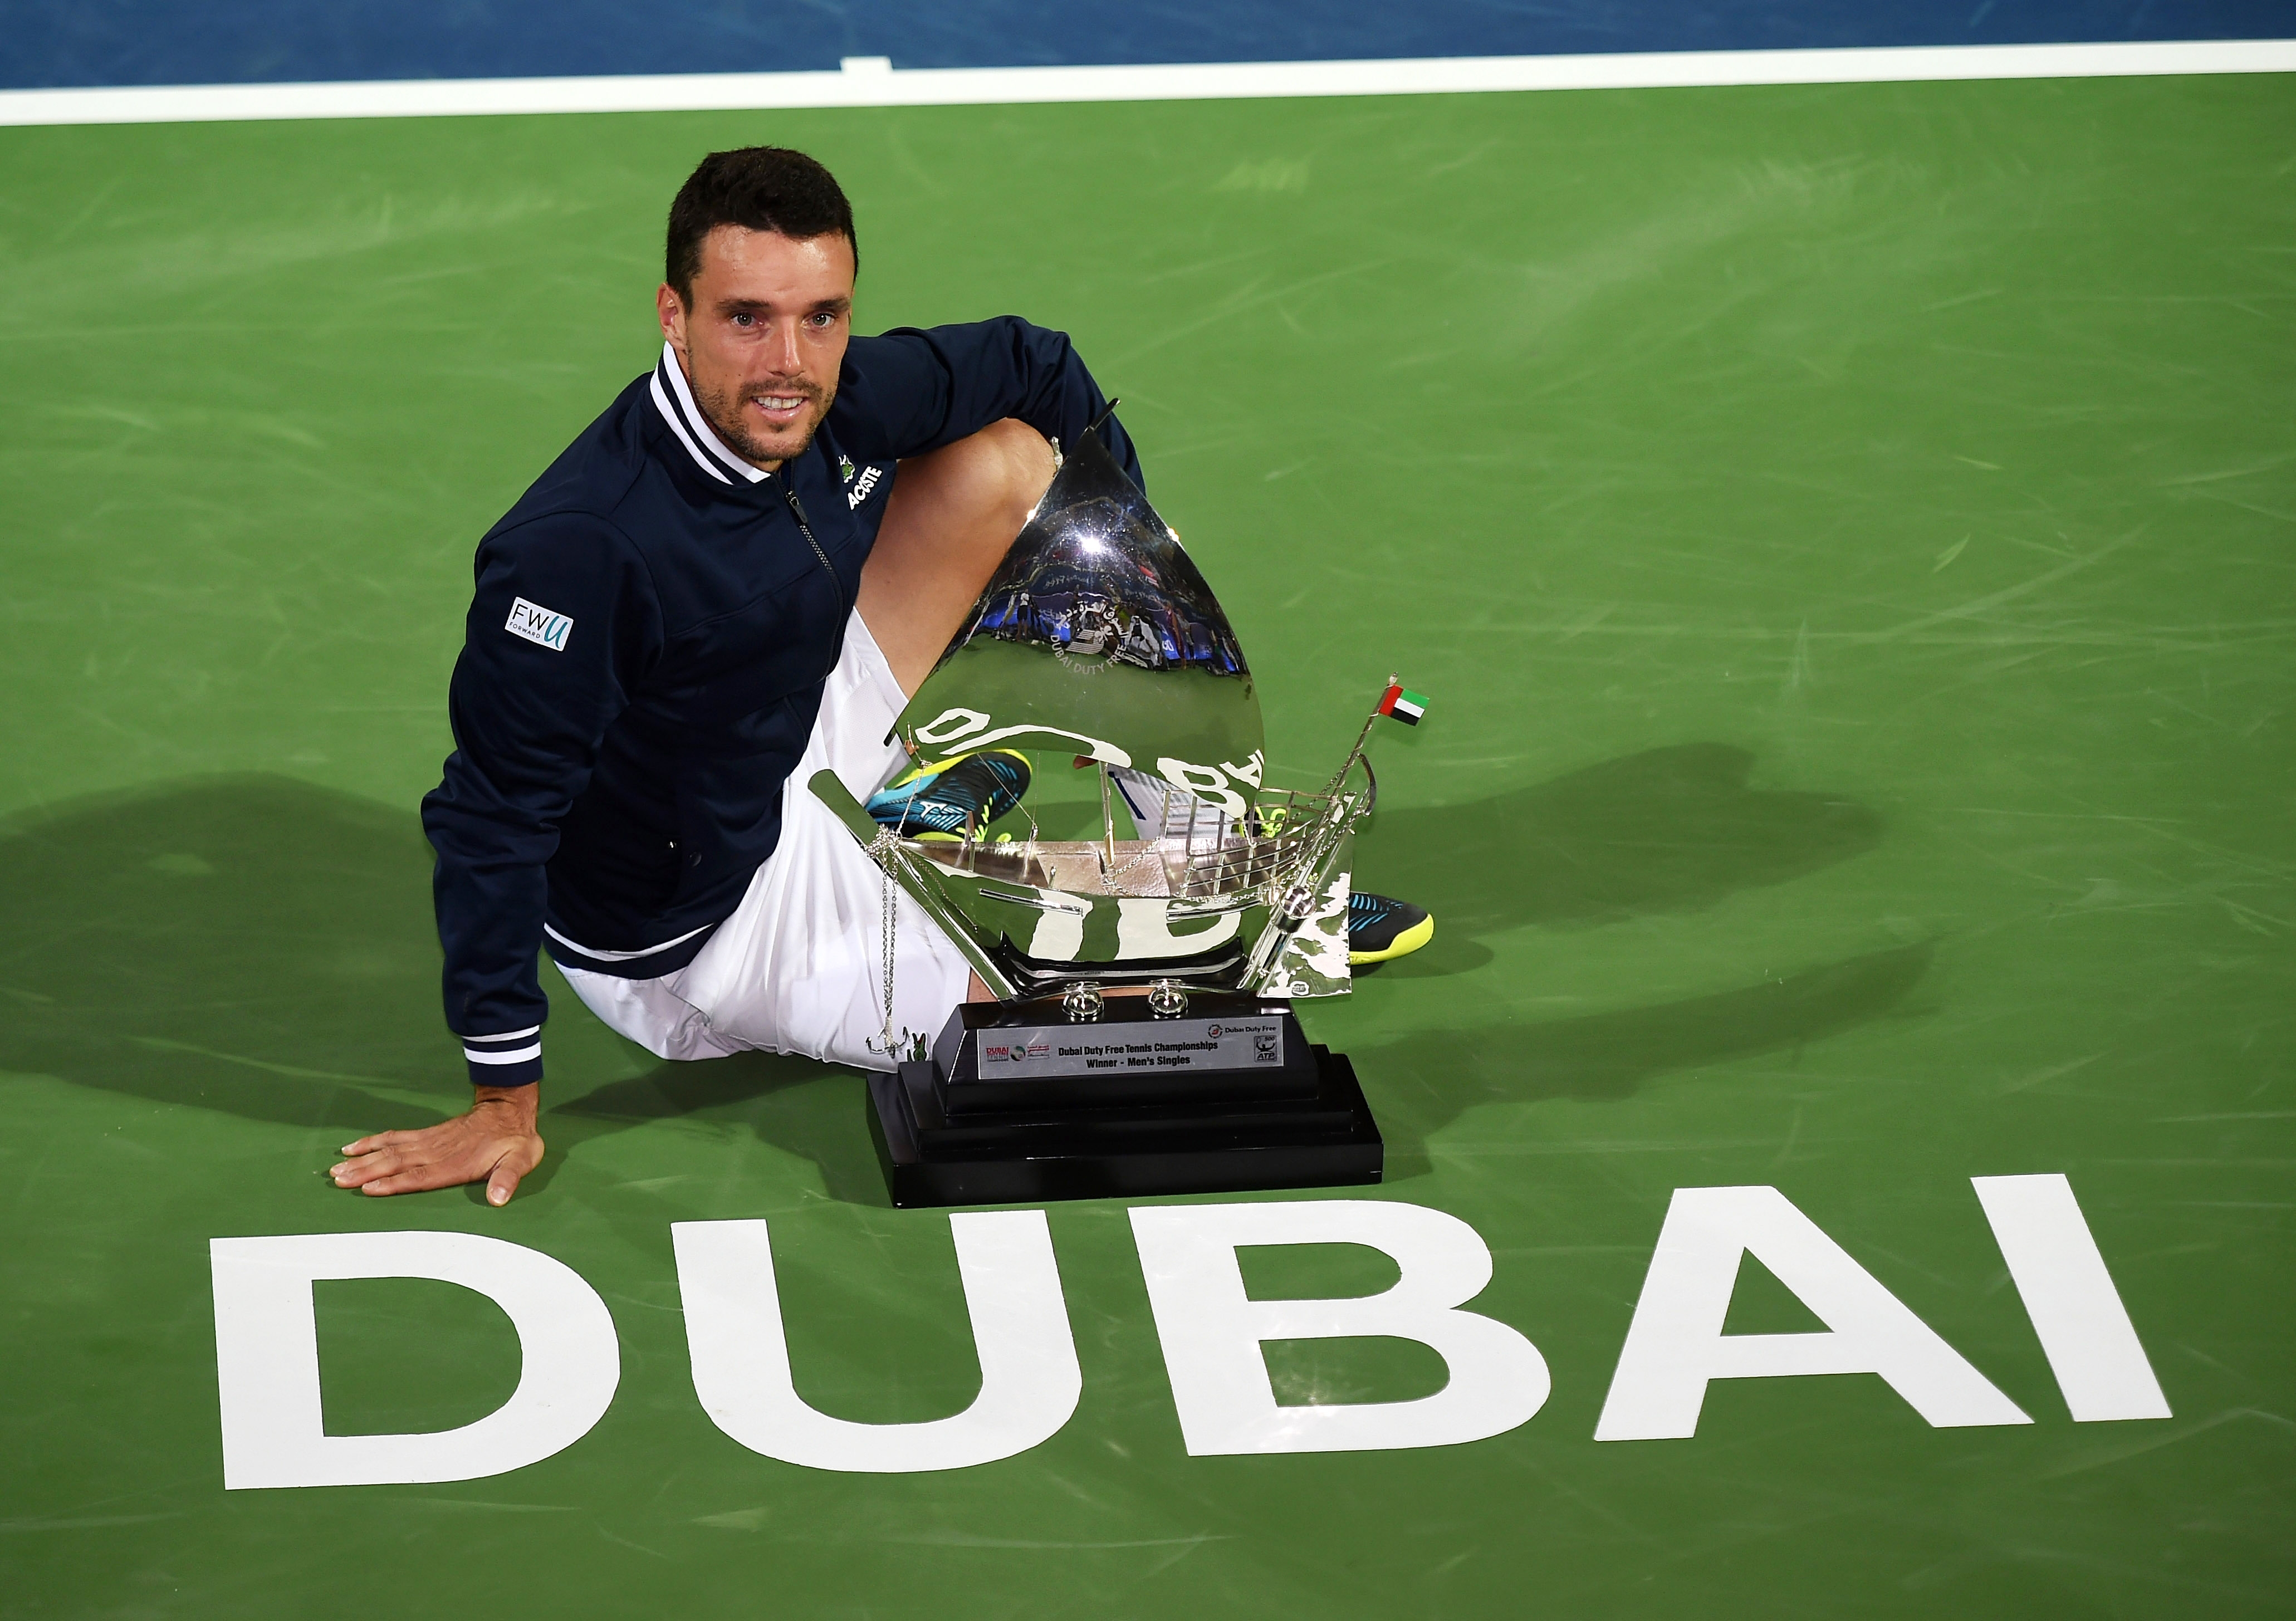 Испанецът Роберто Баутиста Агут спечели турнира в Дубай с награден